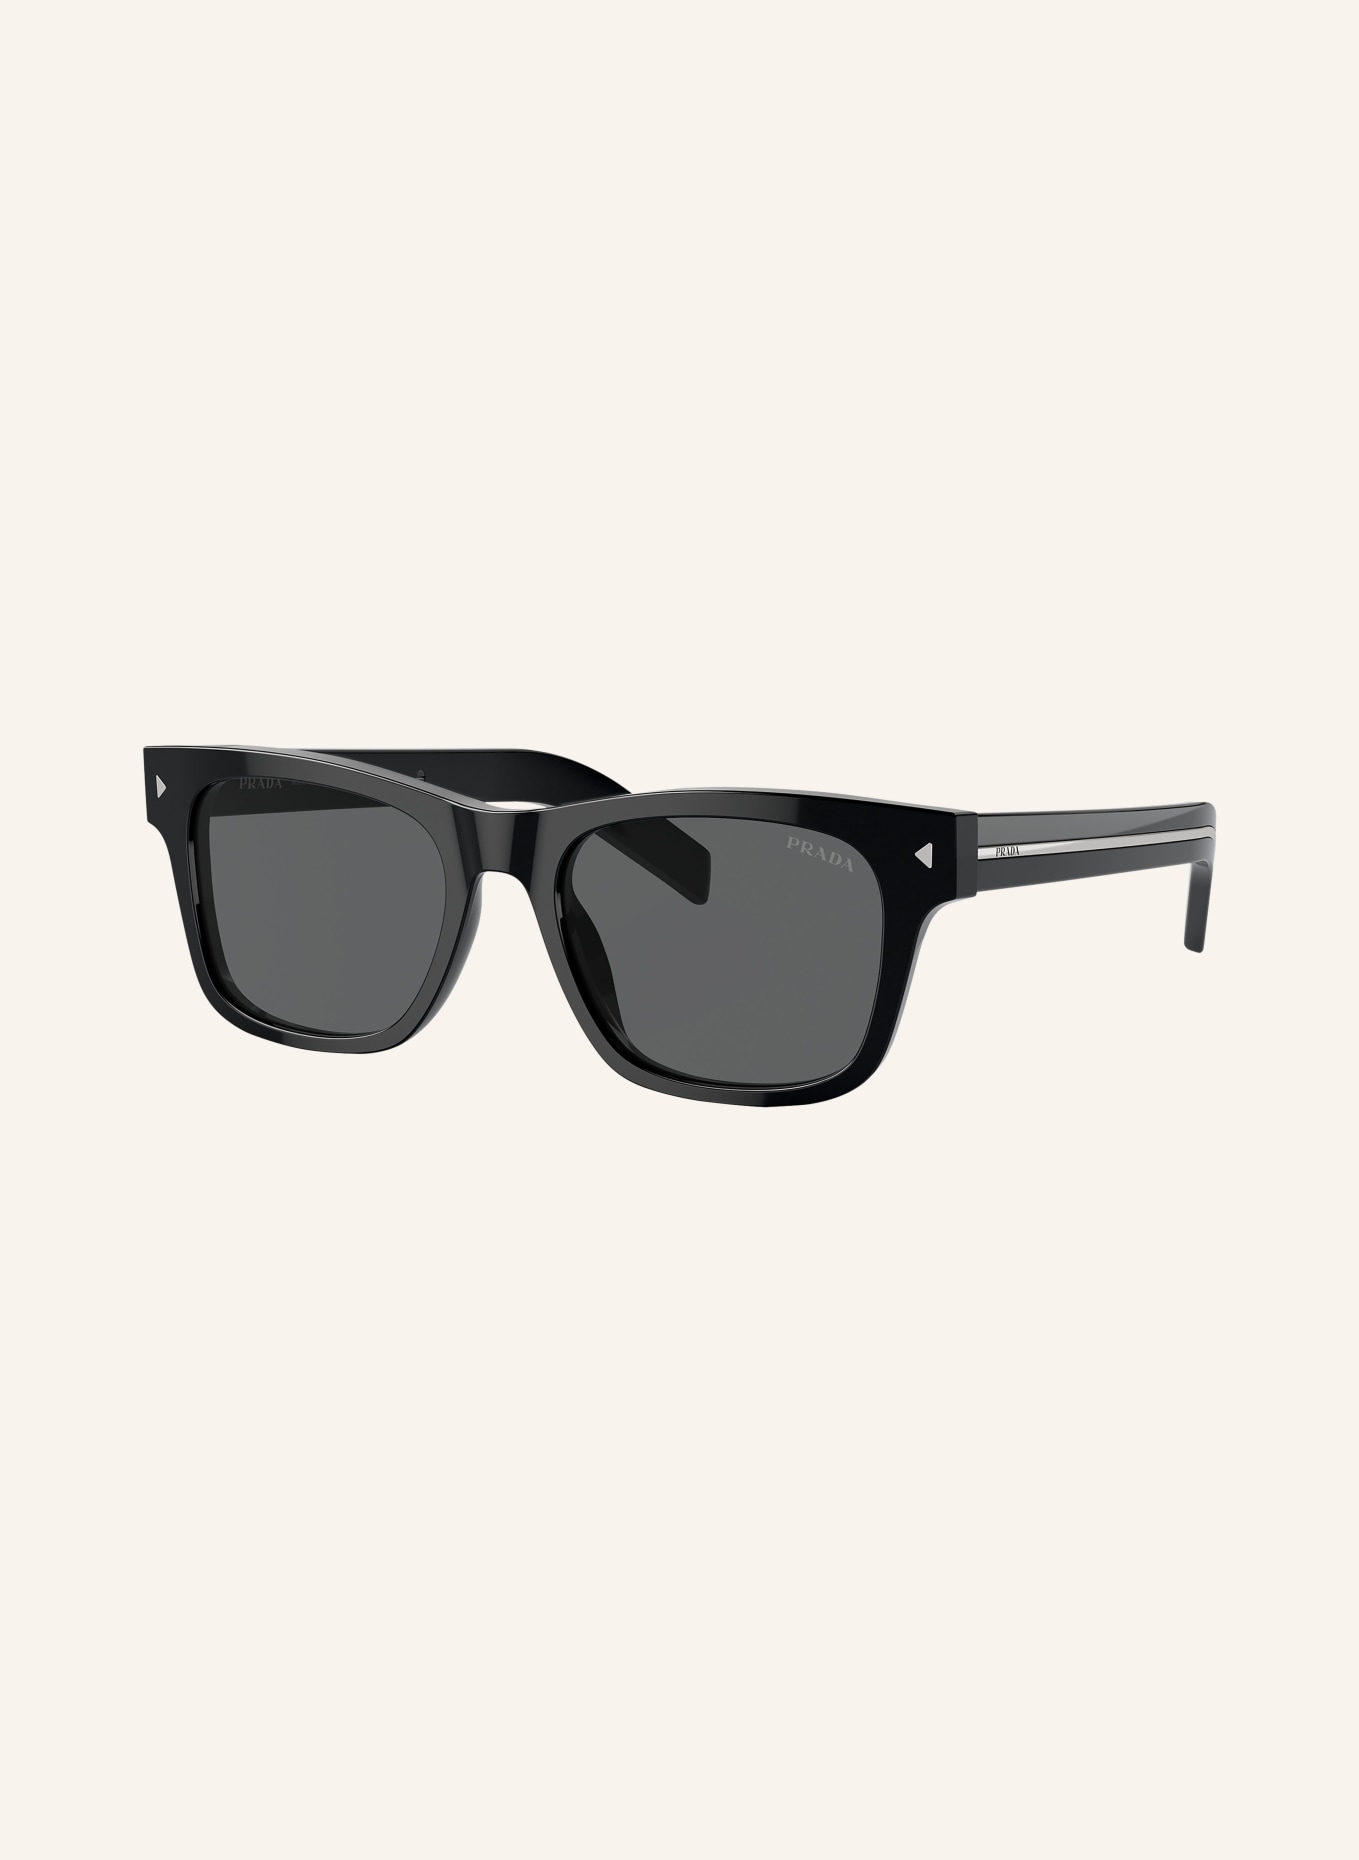 PRADA LINEA ROSSA Sunglasses PR A17S, Color: 16K731 - BLACK/ DARK GRAY (Image 1)